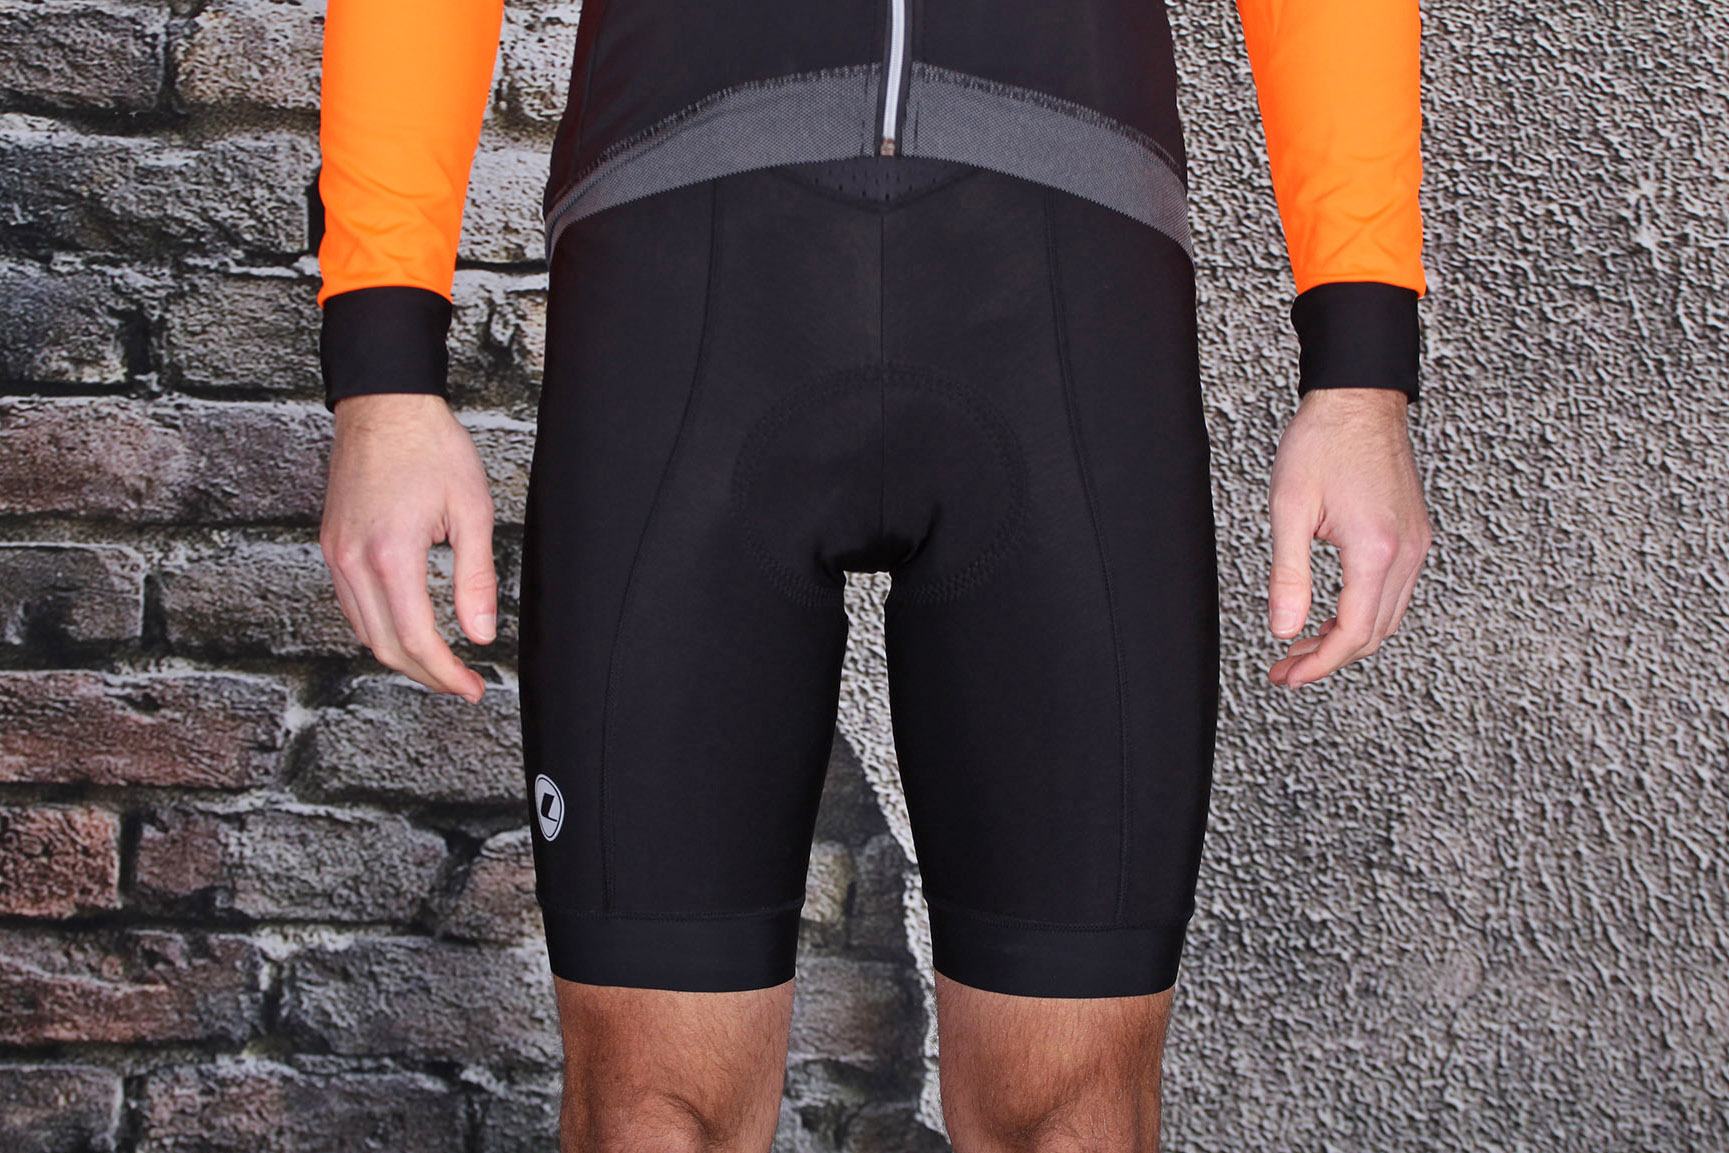 thermal bib shorts cycling